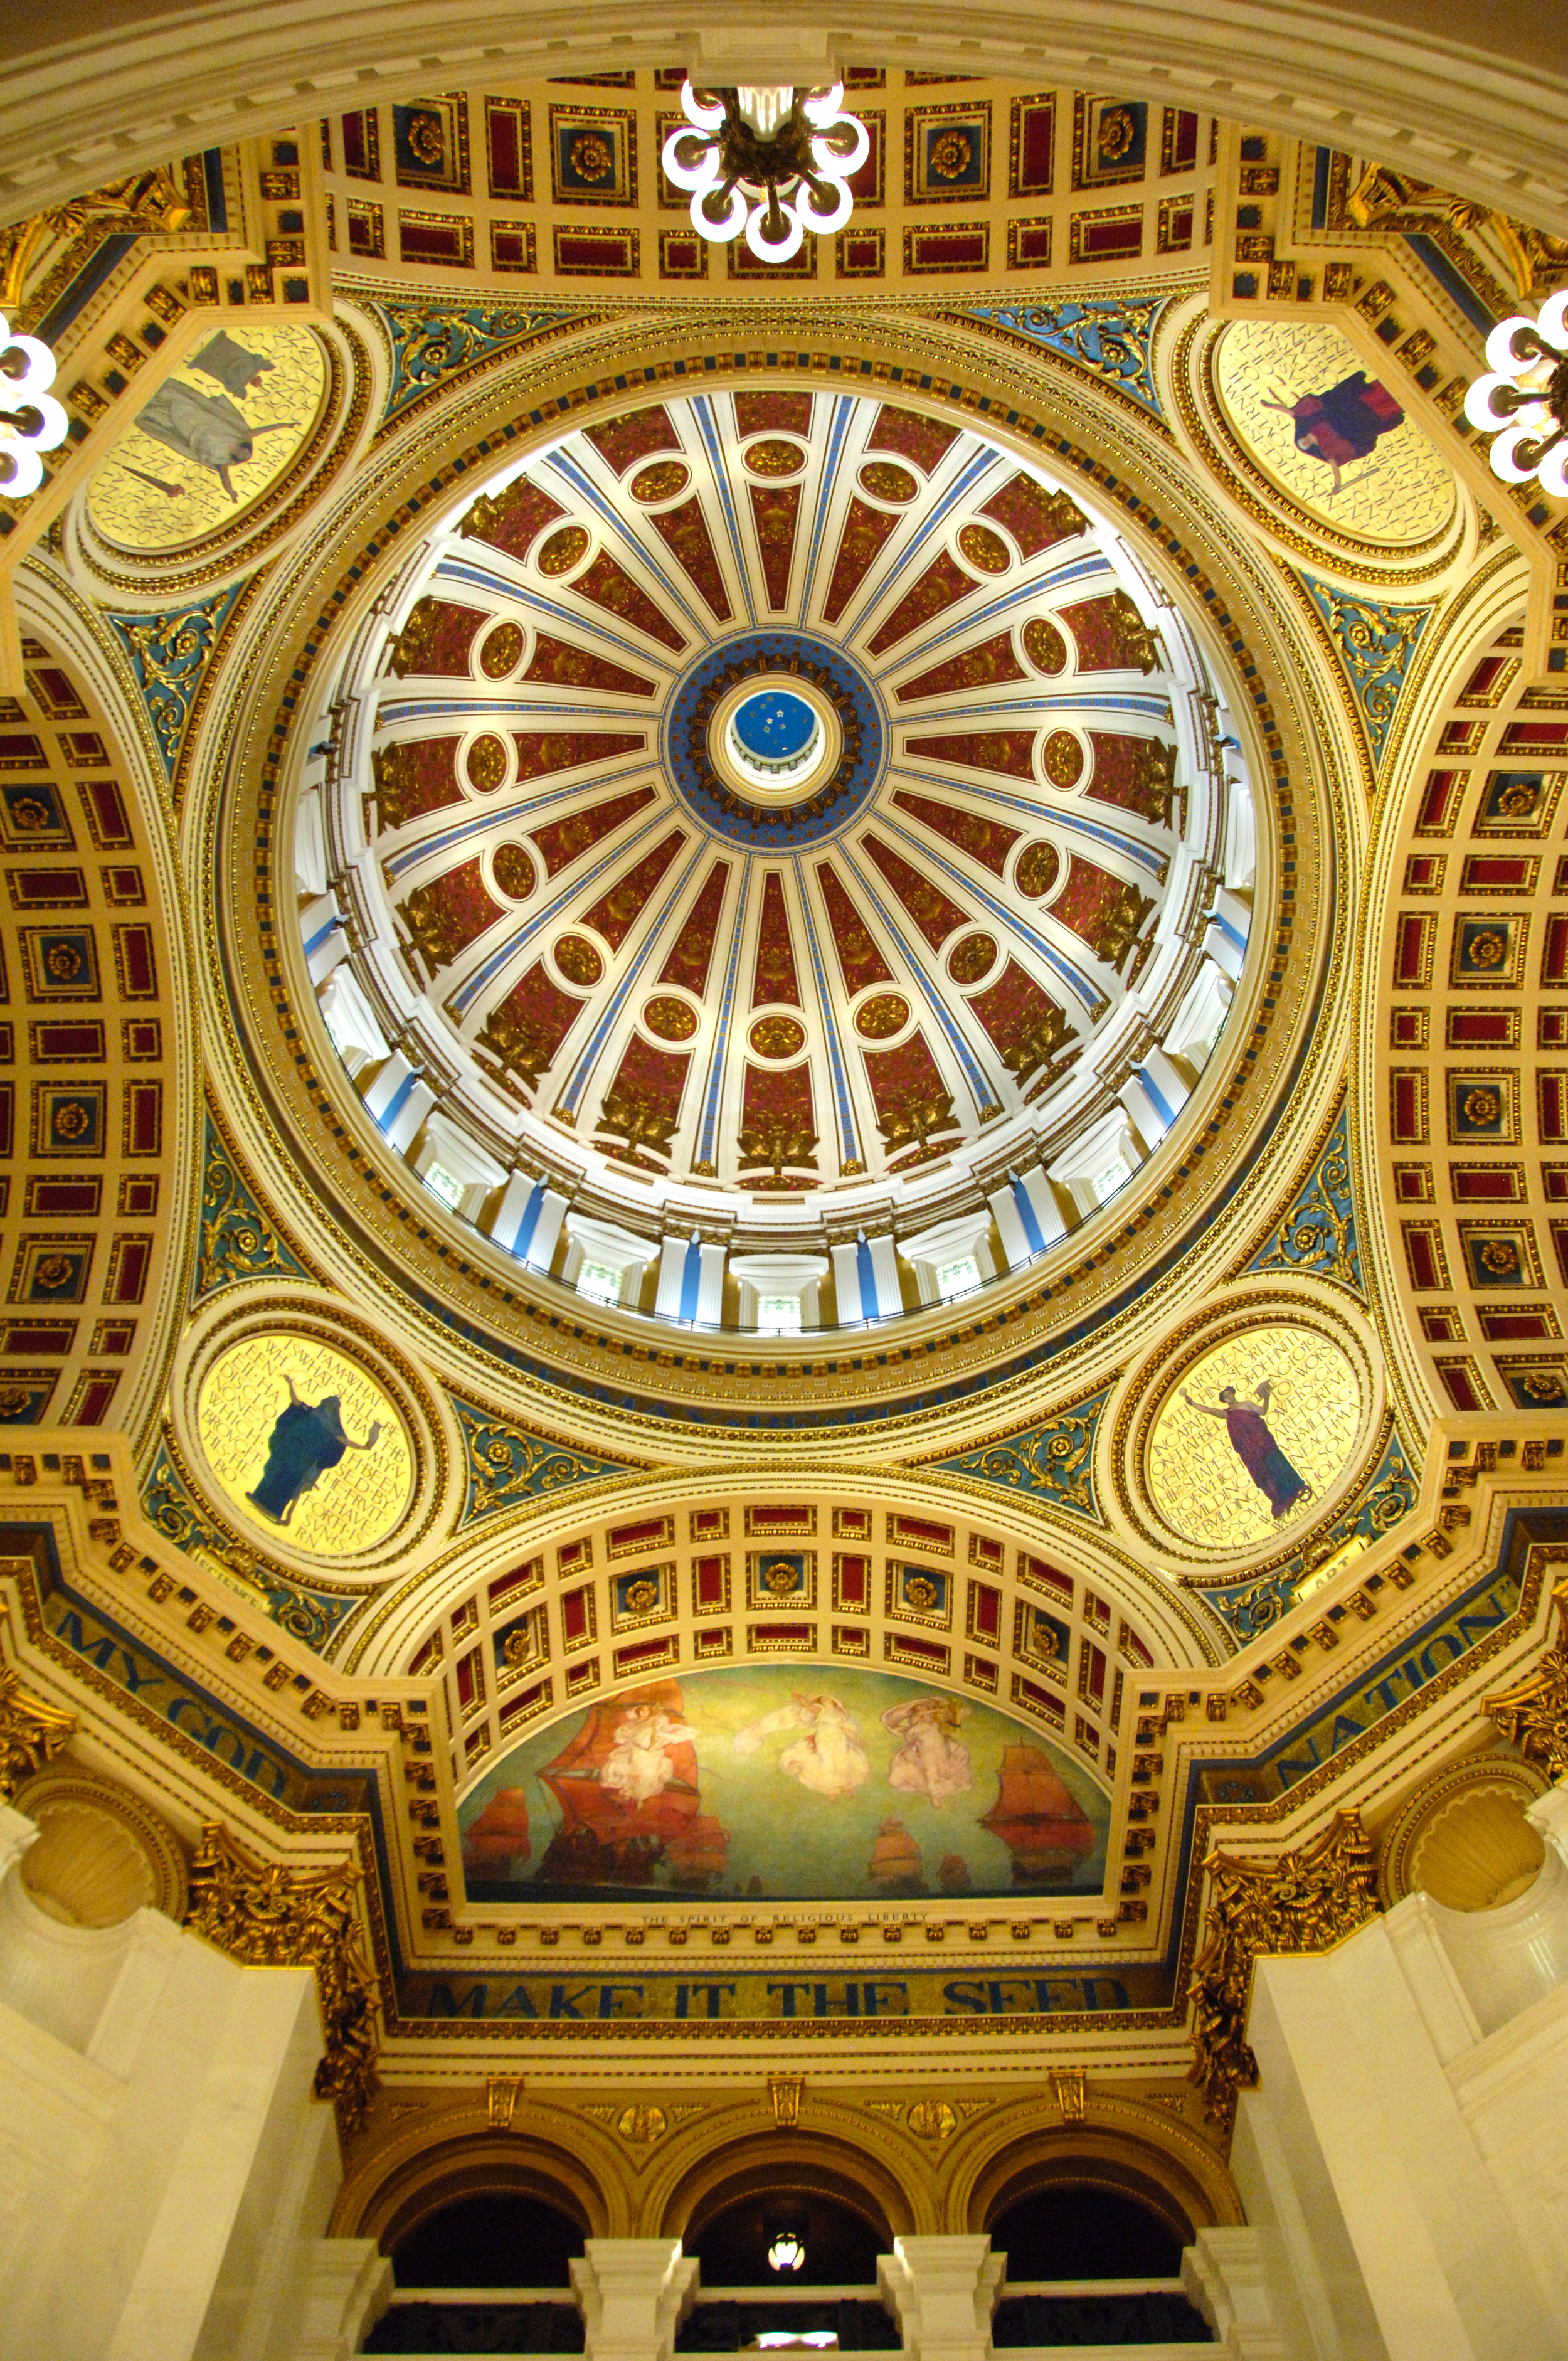 Capitol dome interior